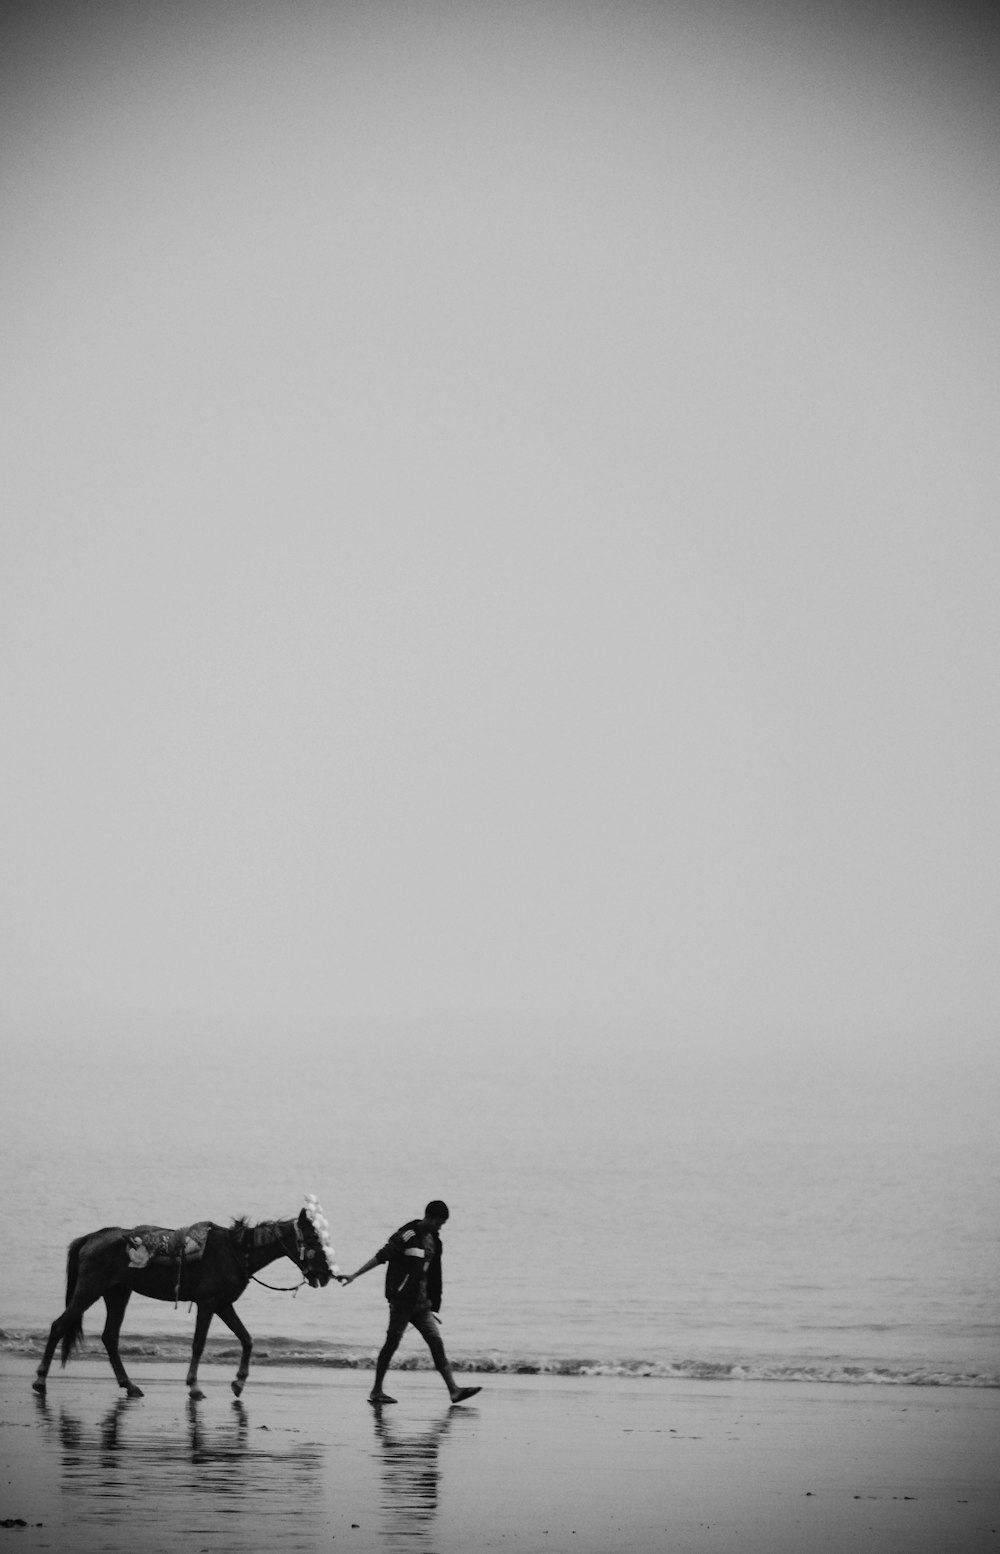 바다 한가운데에 있는 바위에 앉아 있는 남자와 여자의 회색조 사진